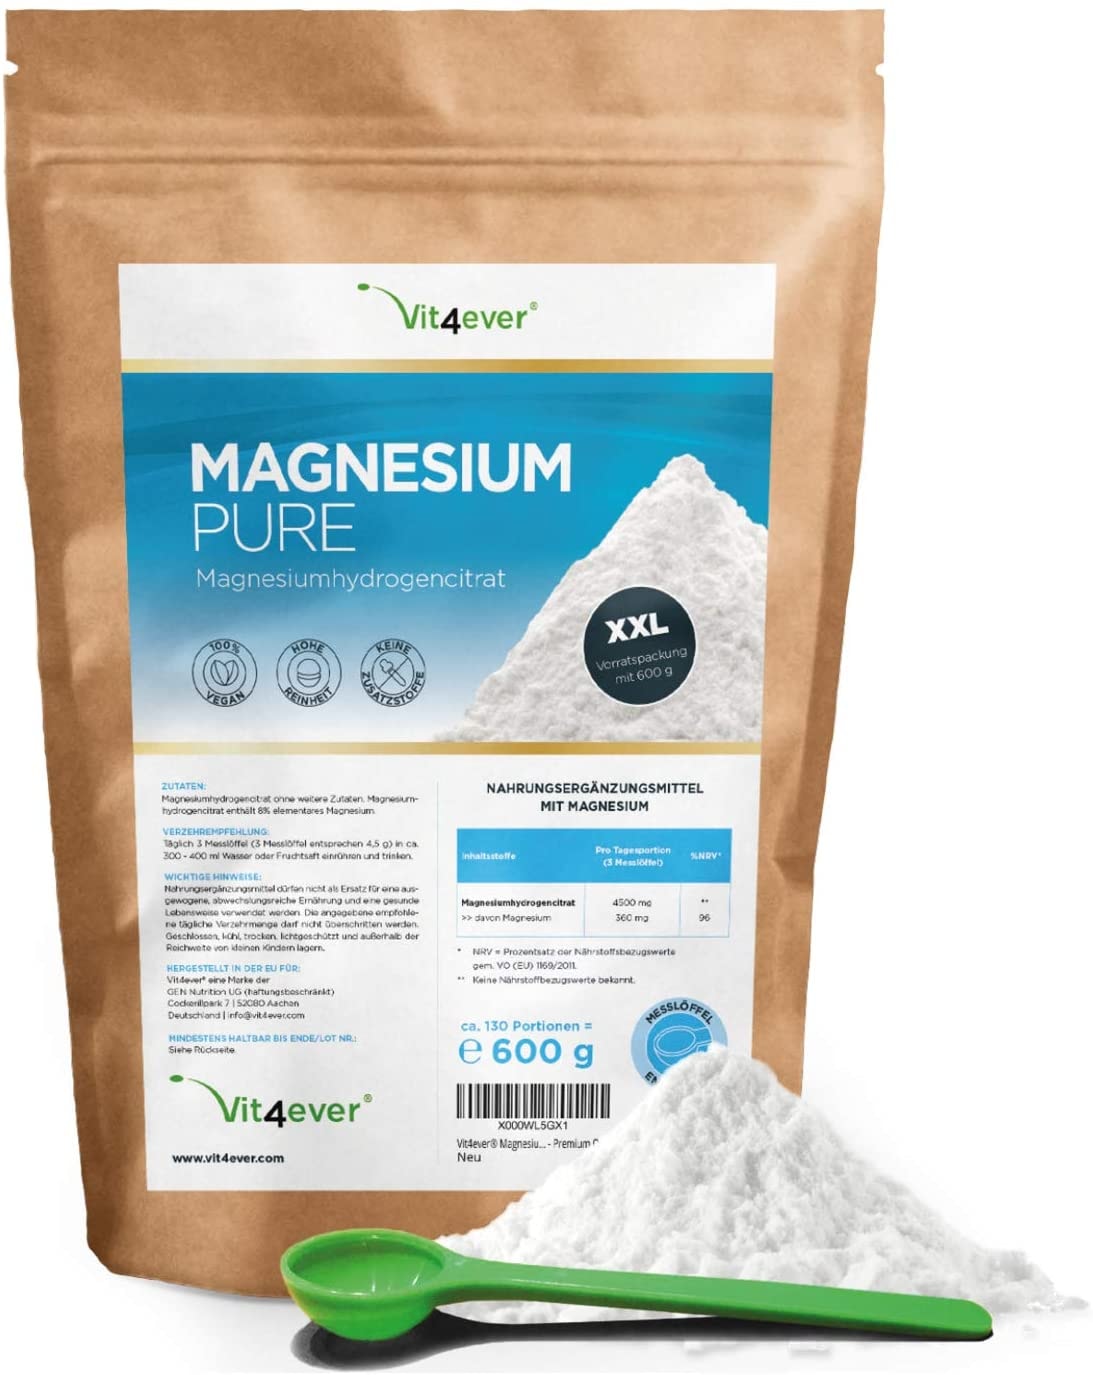 Vit4ever - Magnesium Pure - 600 g Pulver (4,3 Monate Vorrat) - Laborgeprüft (Wirkstoffgehalt & Reinheit) - Reines Pulver ohne Zusatzstoffe - Premium Qualität - Vegan